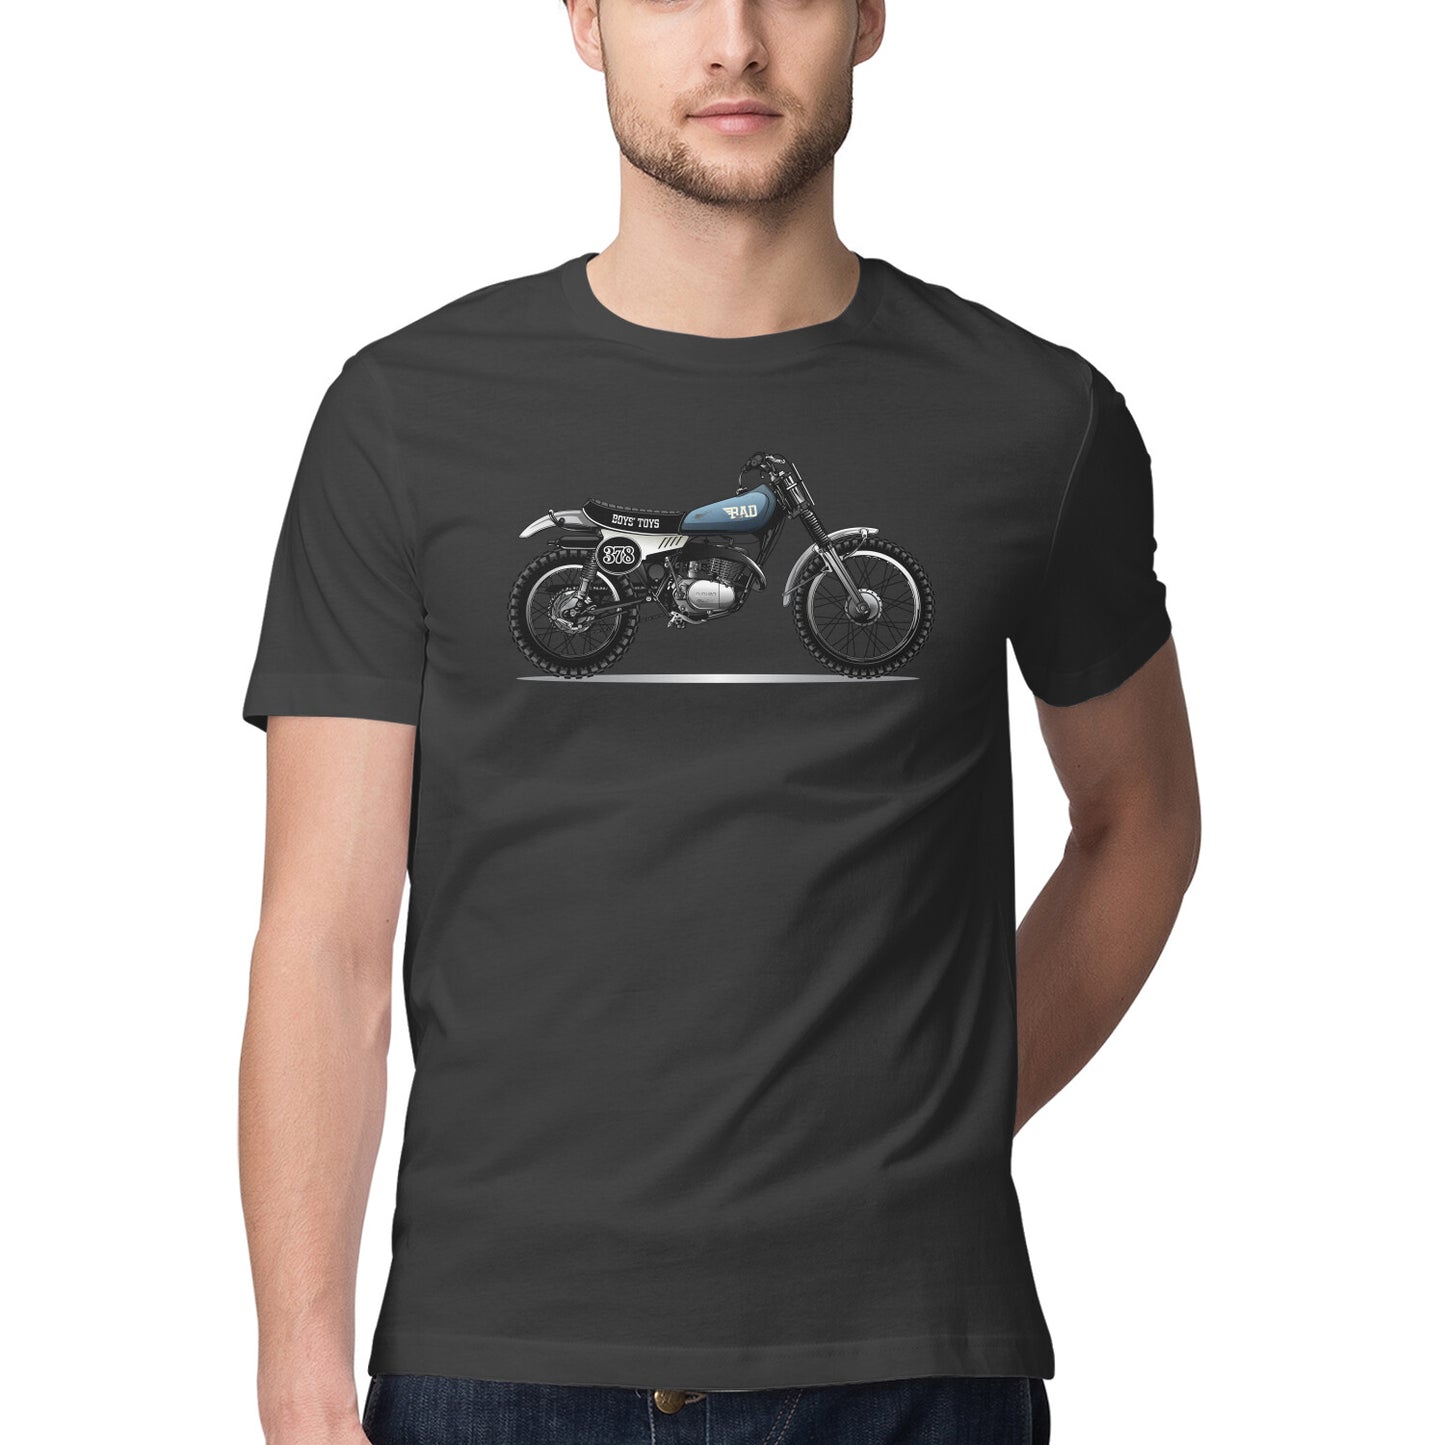 Bike